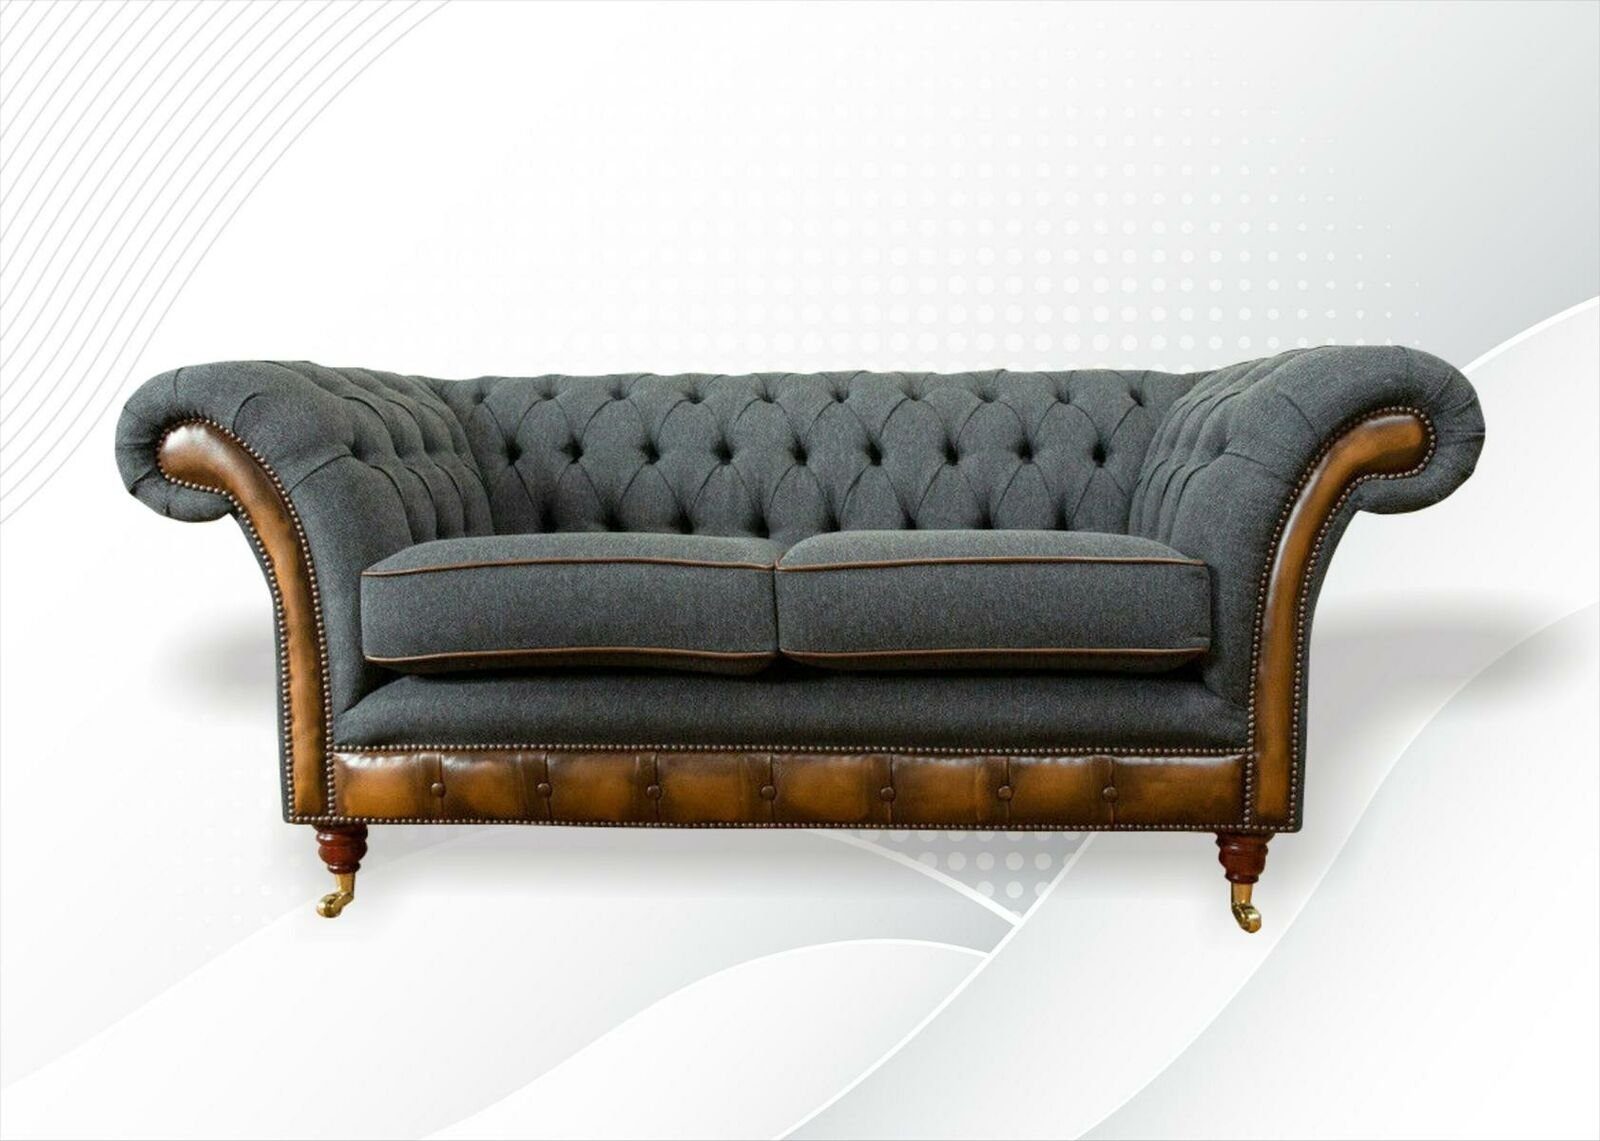 Sofa Graue couchen Stoff Sofas Chesterfield-Sofa, Design Chesterfield Wohnzimmer Modern Sitzer JVmoebel 2